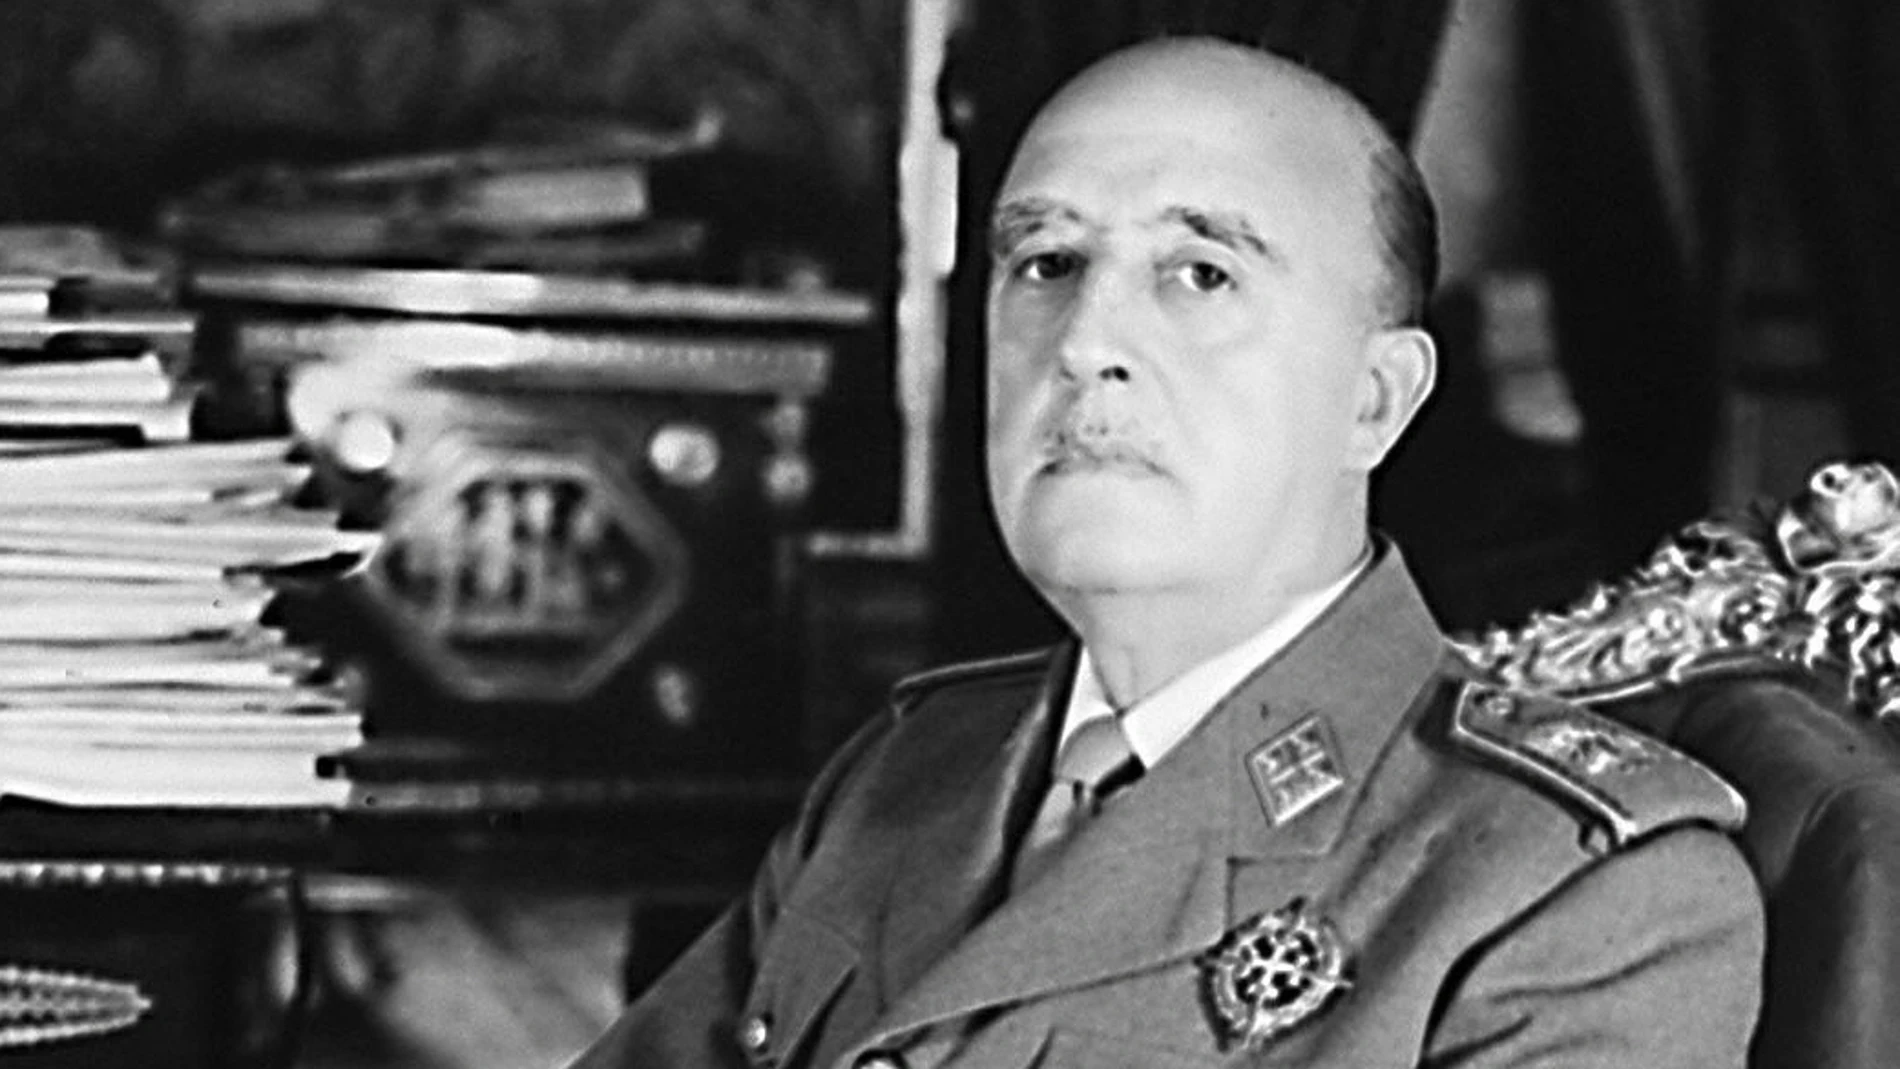  Fotografía de archivo (años 60) de Francisco Franco.